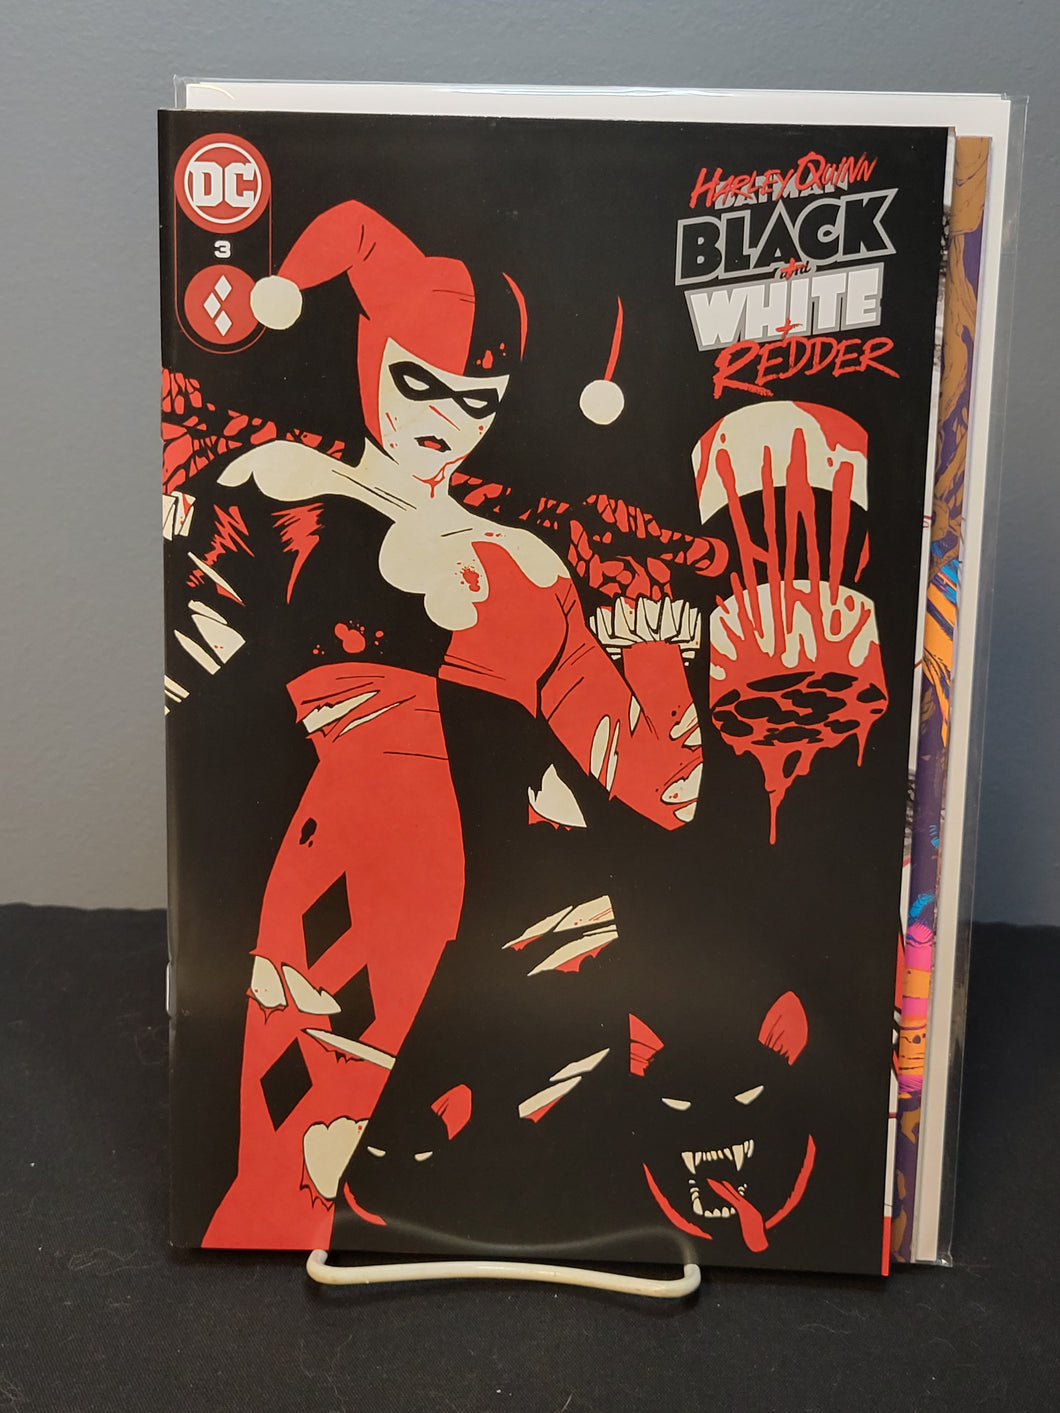 Harley Quinn Black White And Redder #3